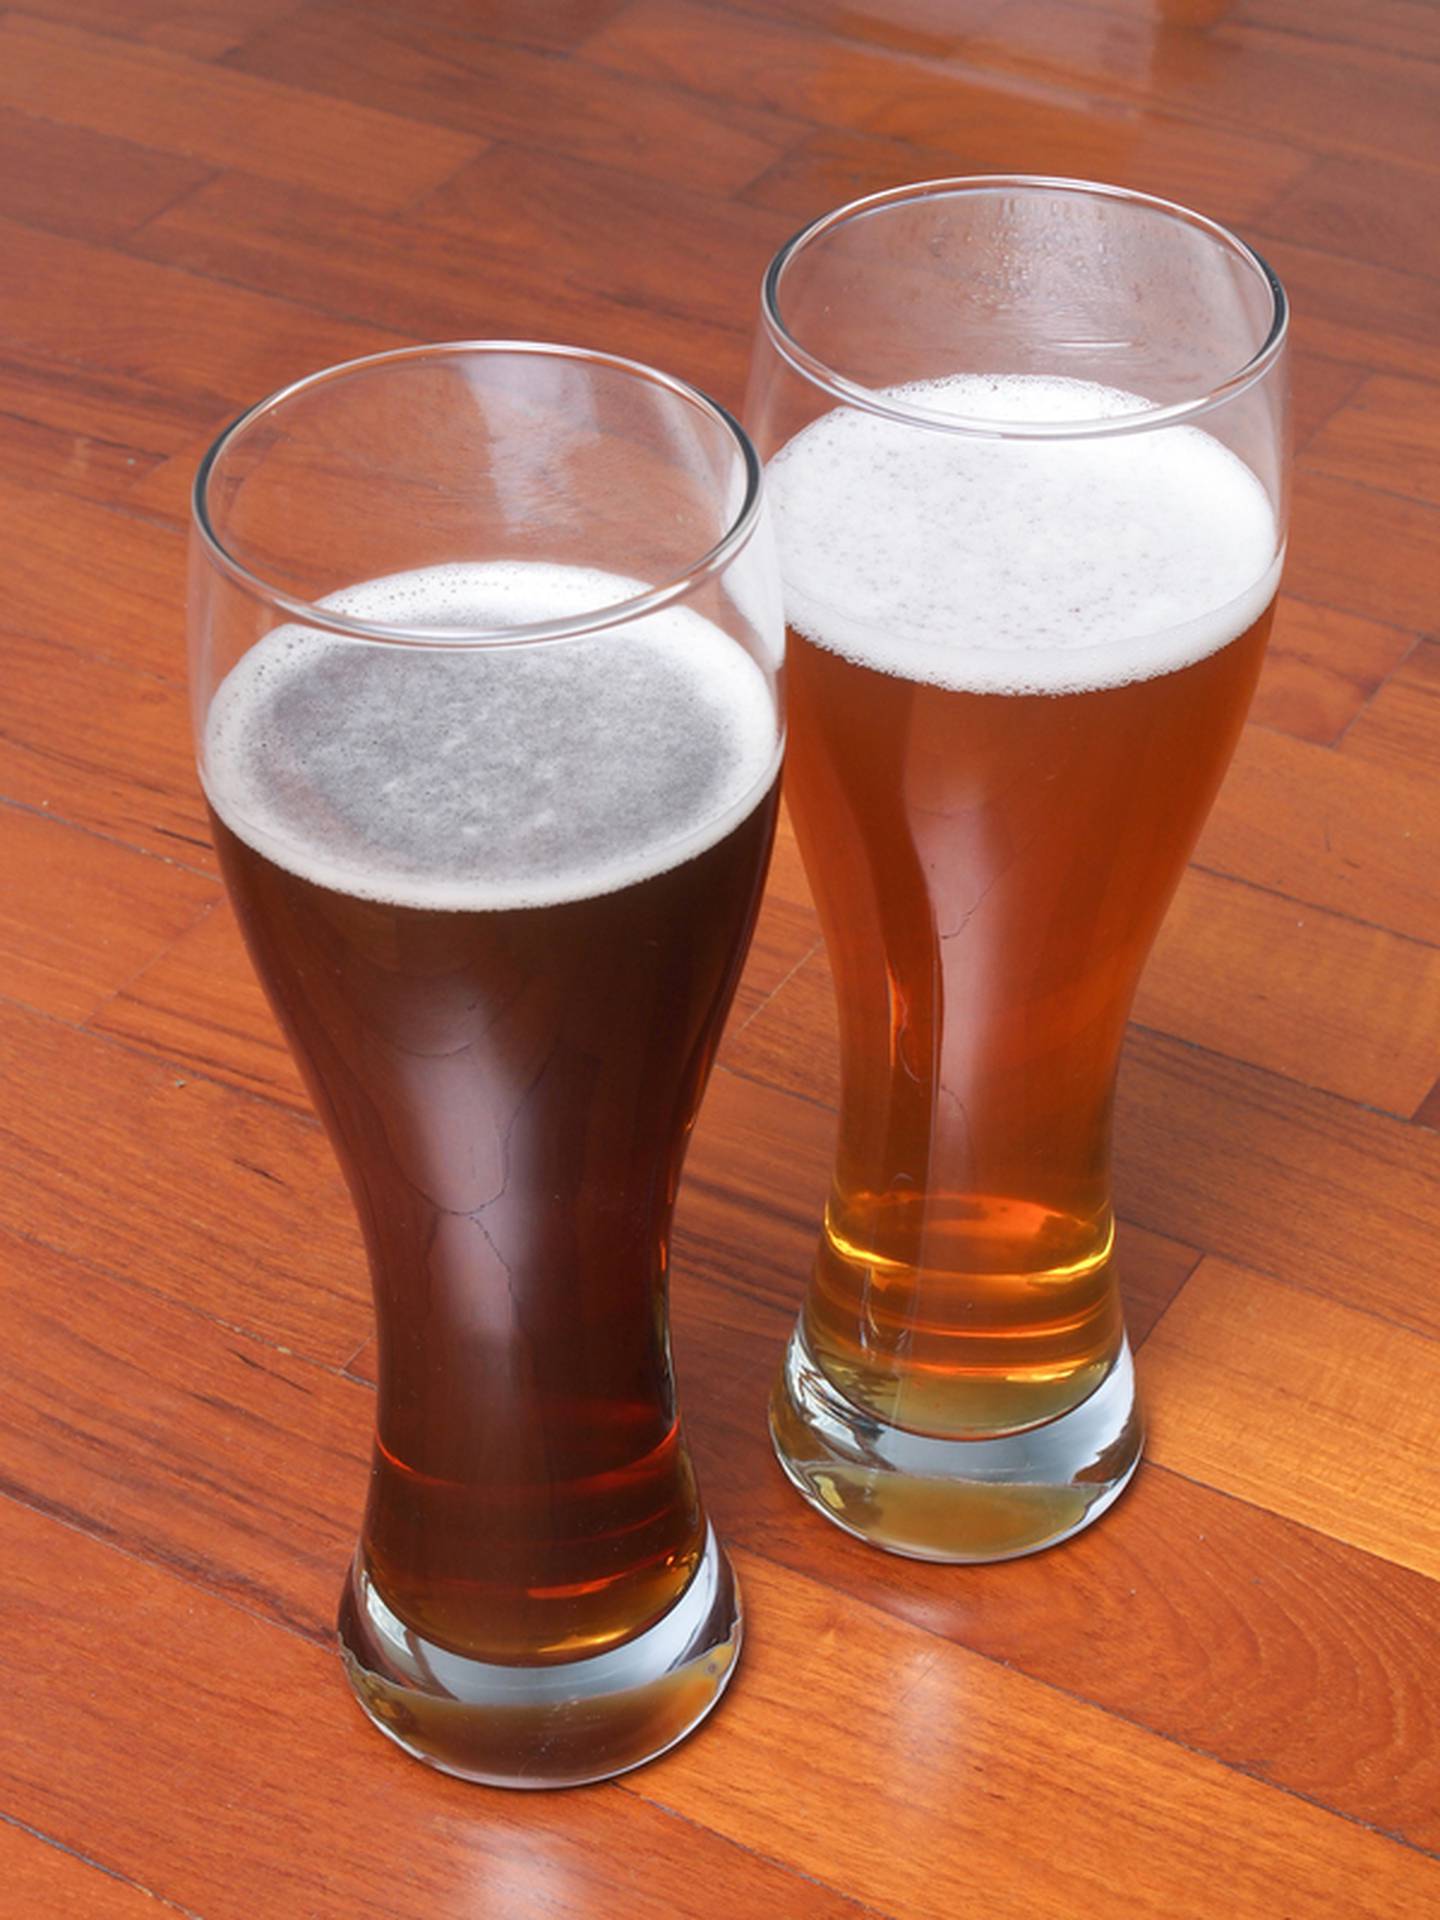 Por su composición, la cerveza es fuente de nutrientes, antioxidantes, vitaminas y minerales.